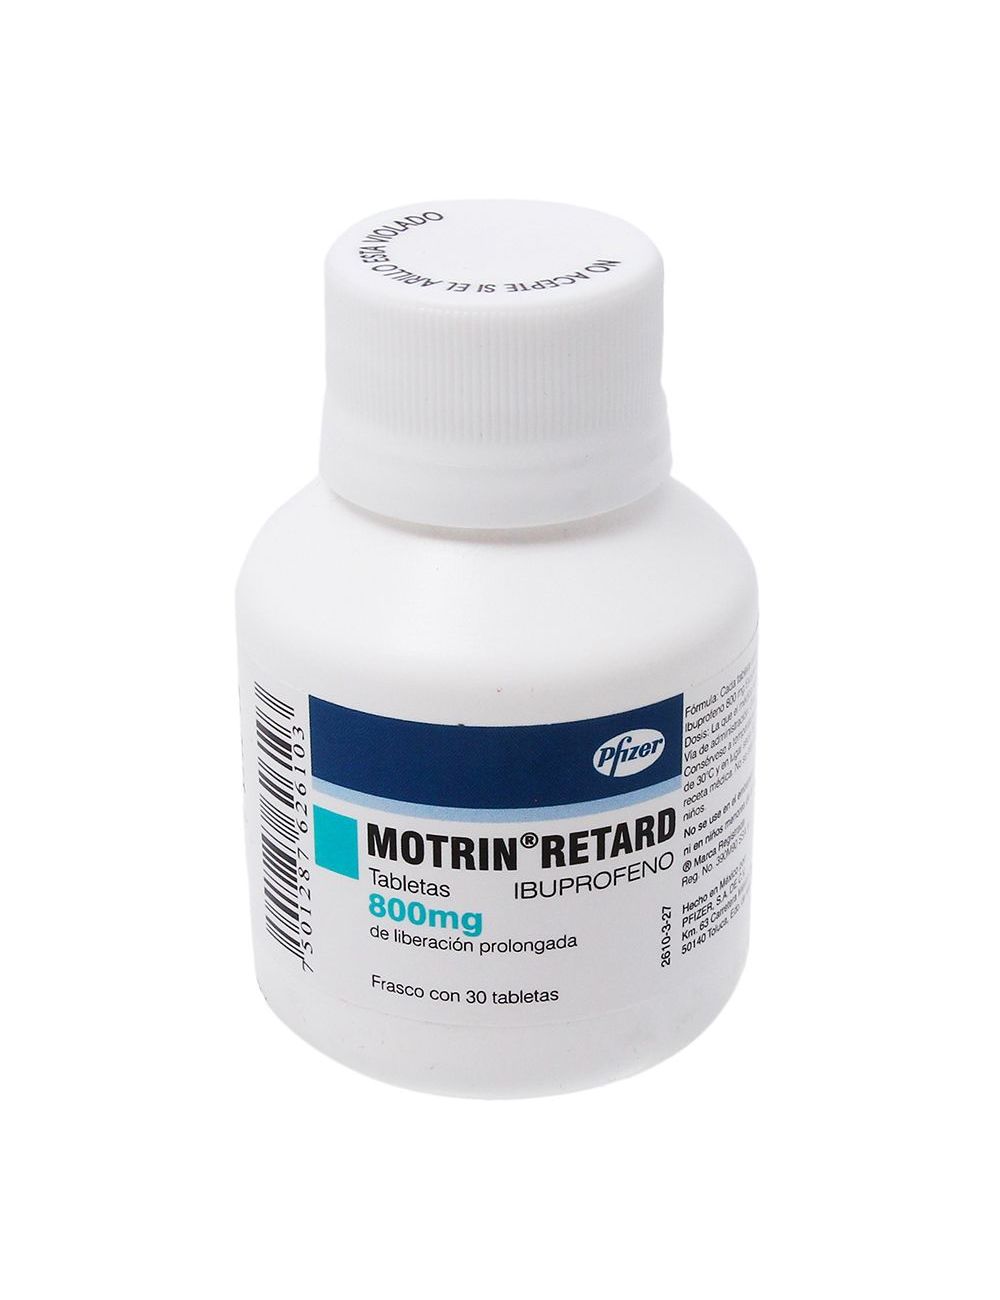 Motrin Retard 800 mg Caja Con 30 Tabletas